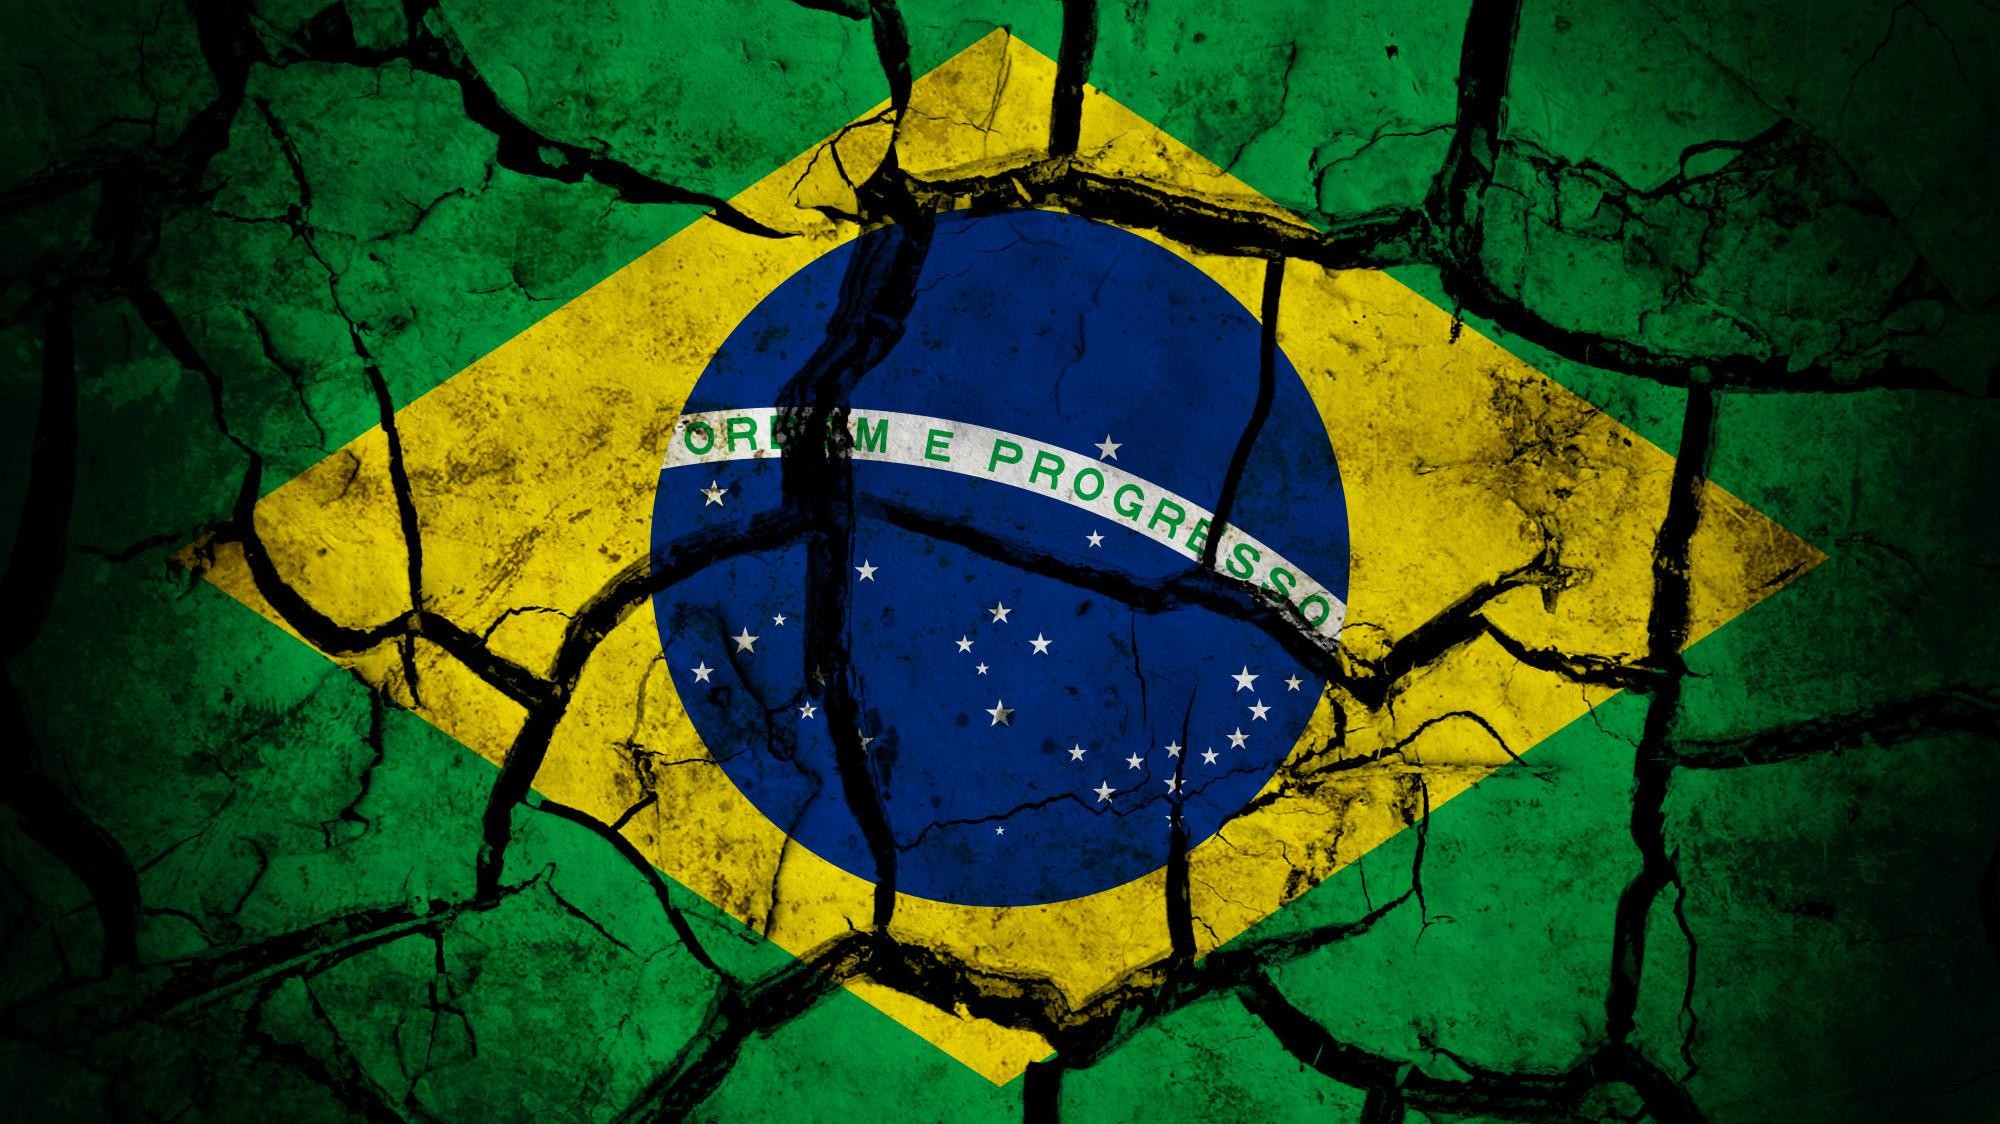 Wallpaper Bandeira Brasil 2018.